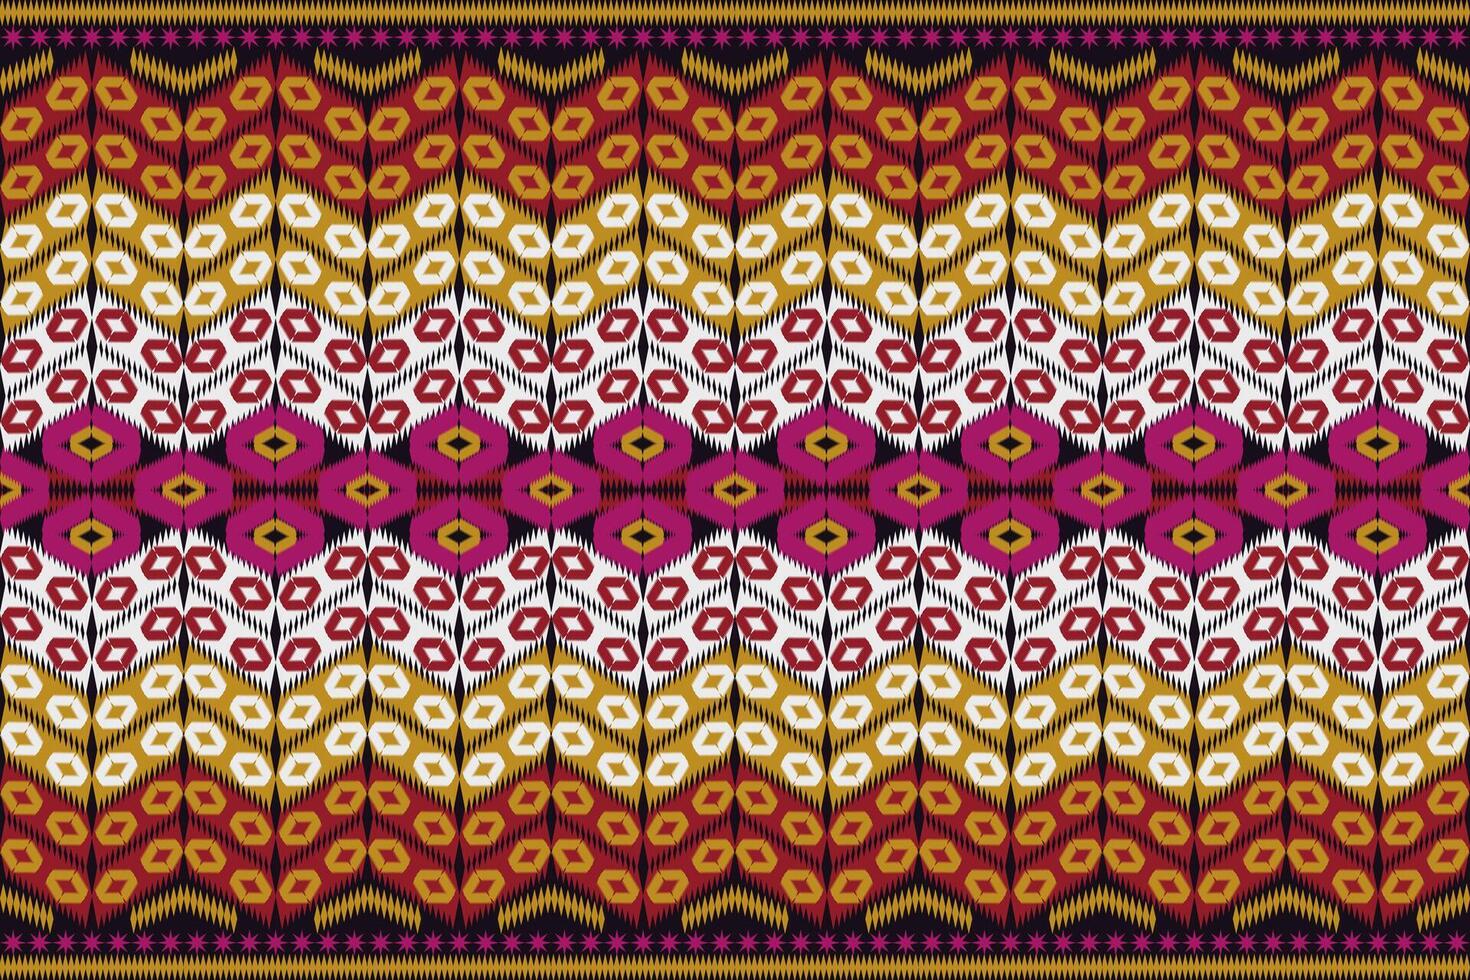 aztec tribal meetkundig achtergrond naadloos streep patroon. traditioneel ornament etnisch stijl. ontwerp voor textiel, kleding stof, kleding, gordijn, tapijt, ornament, inpakken. vector